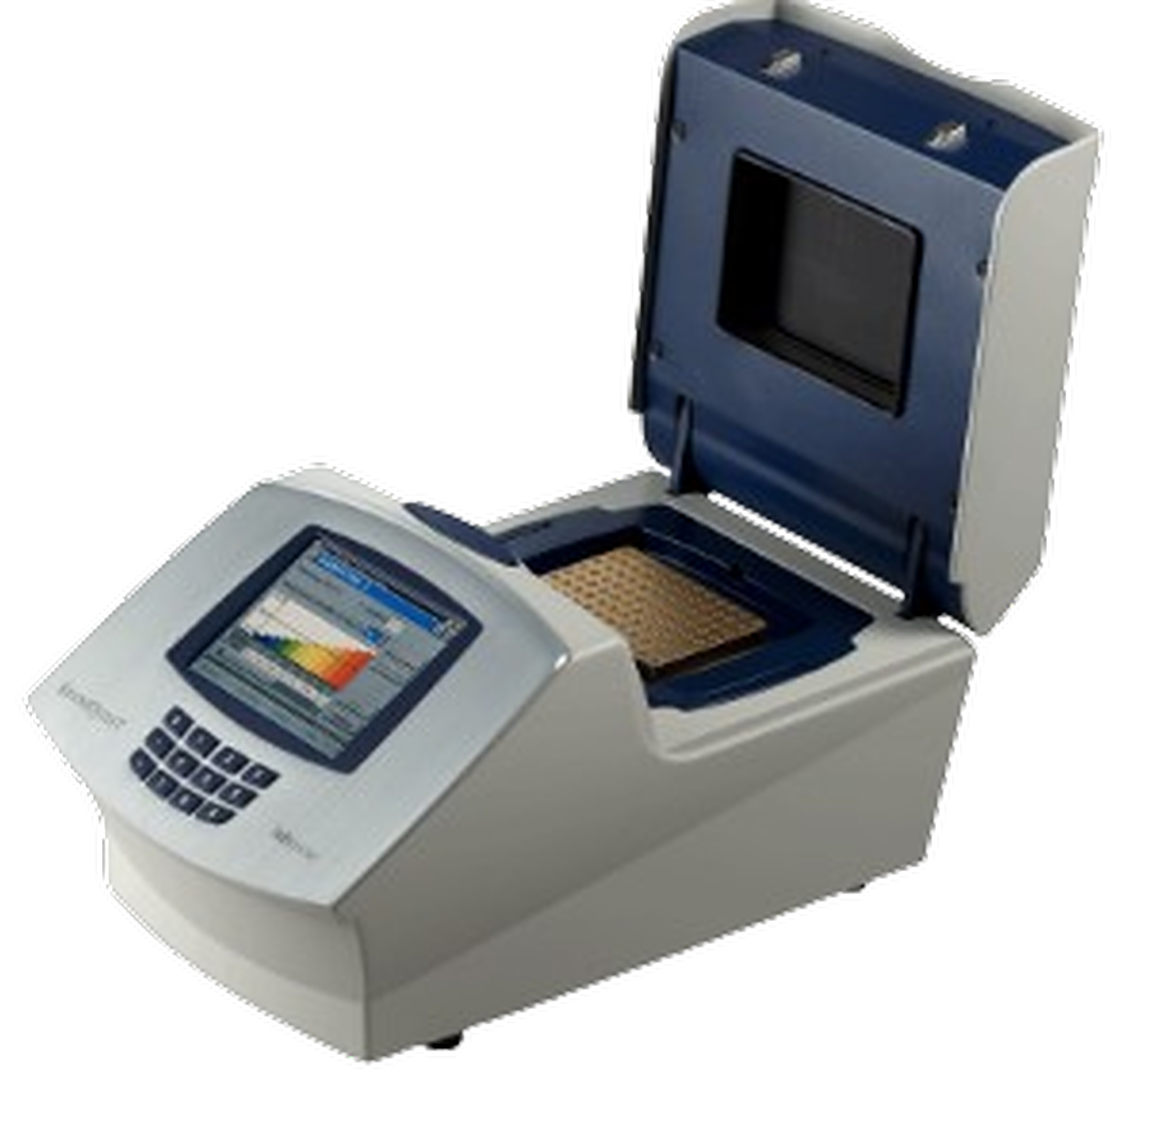   Featured SensoQuest PCR